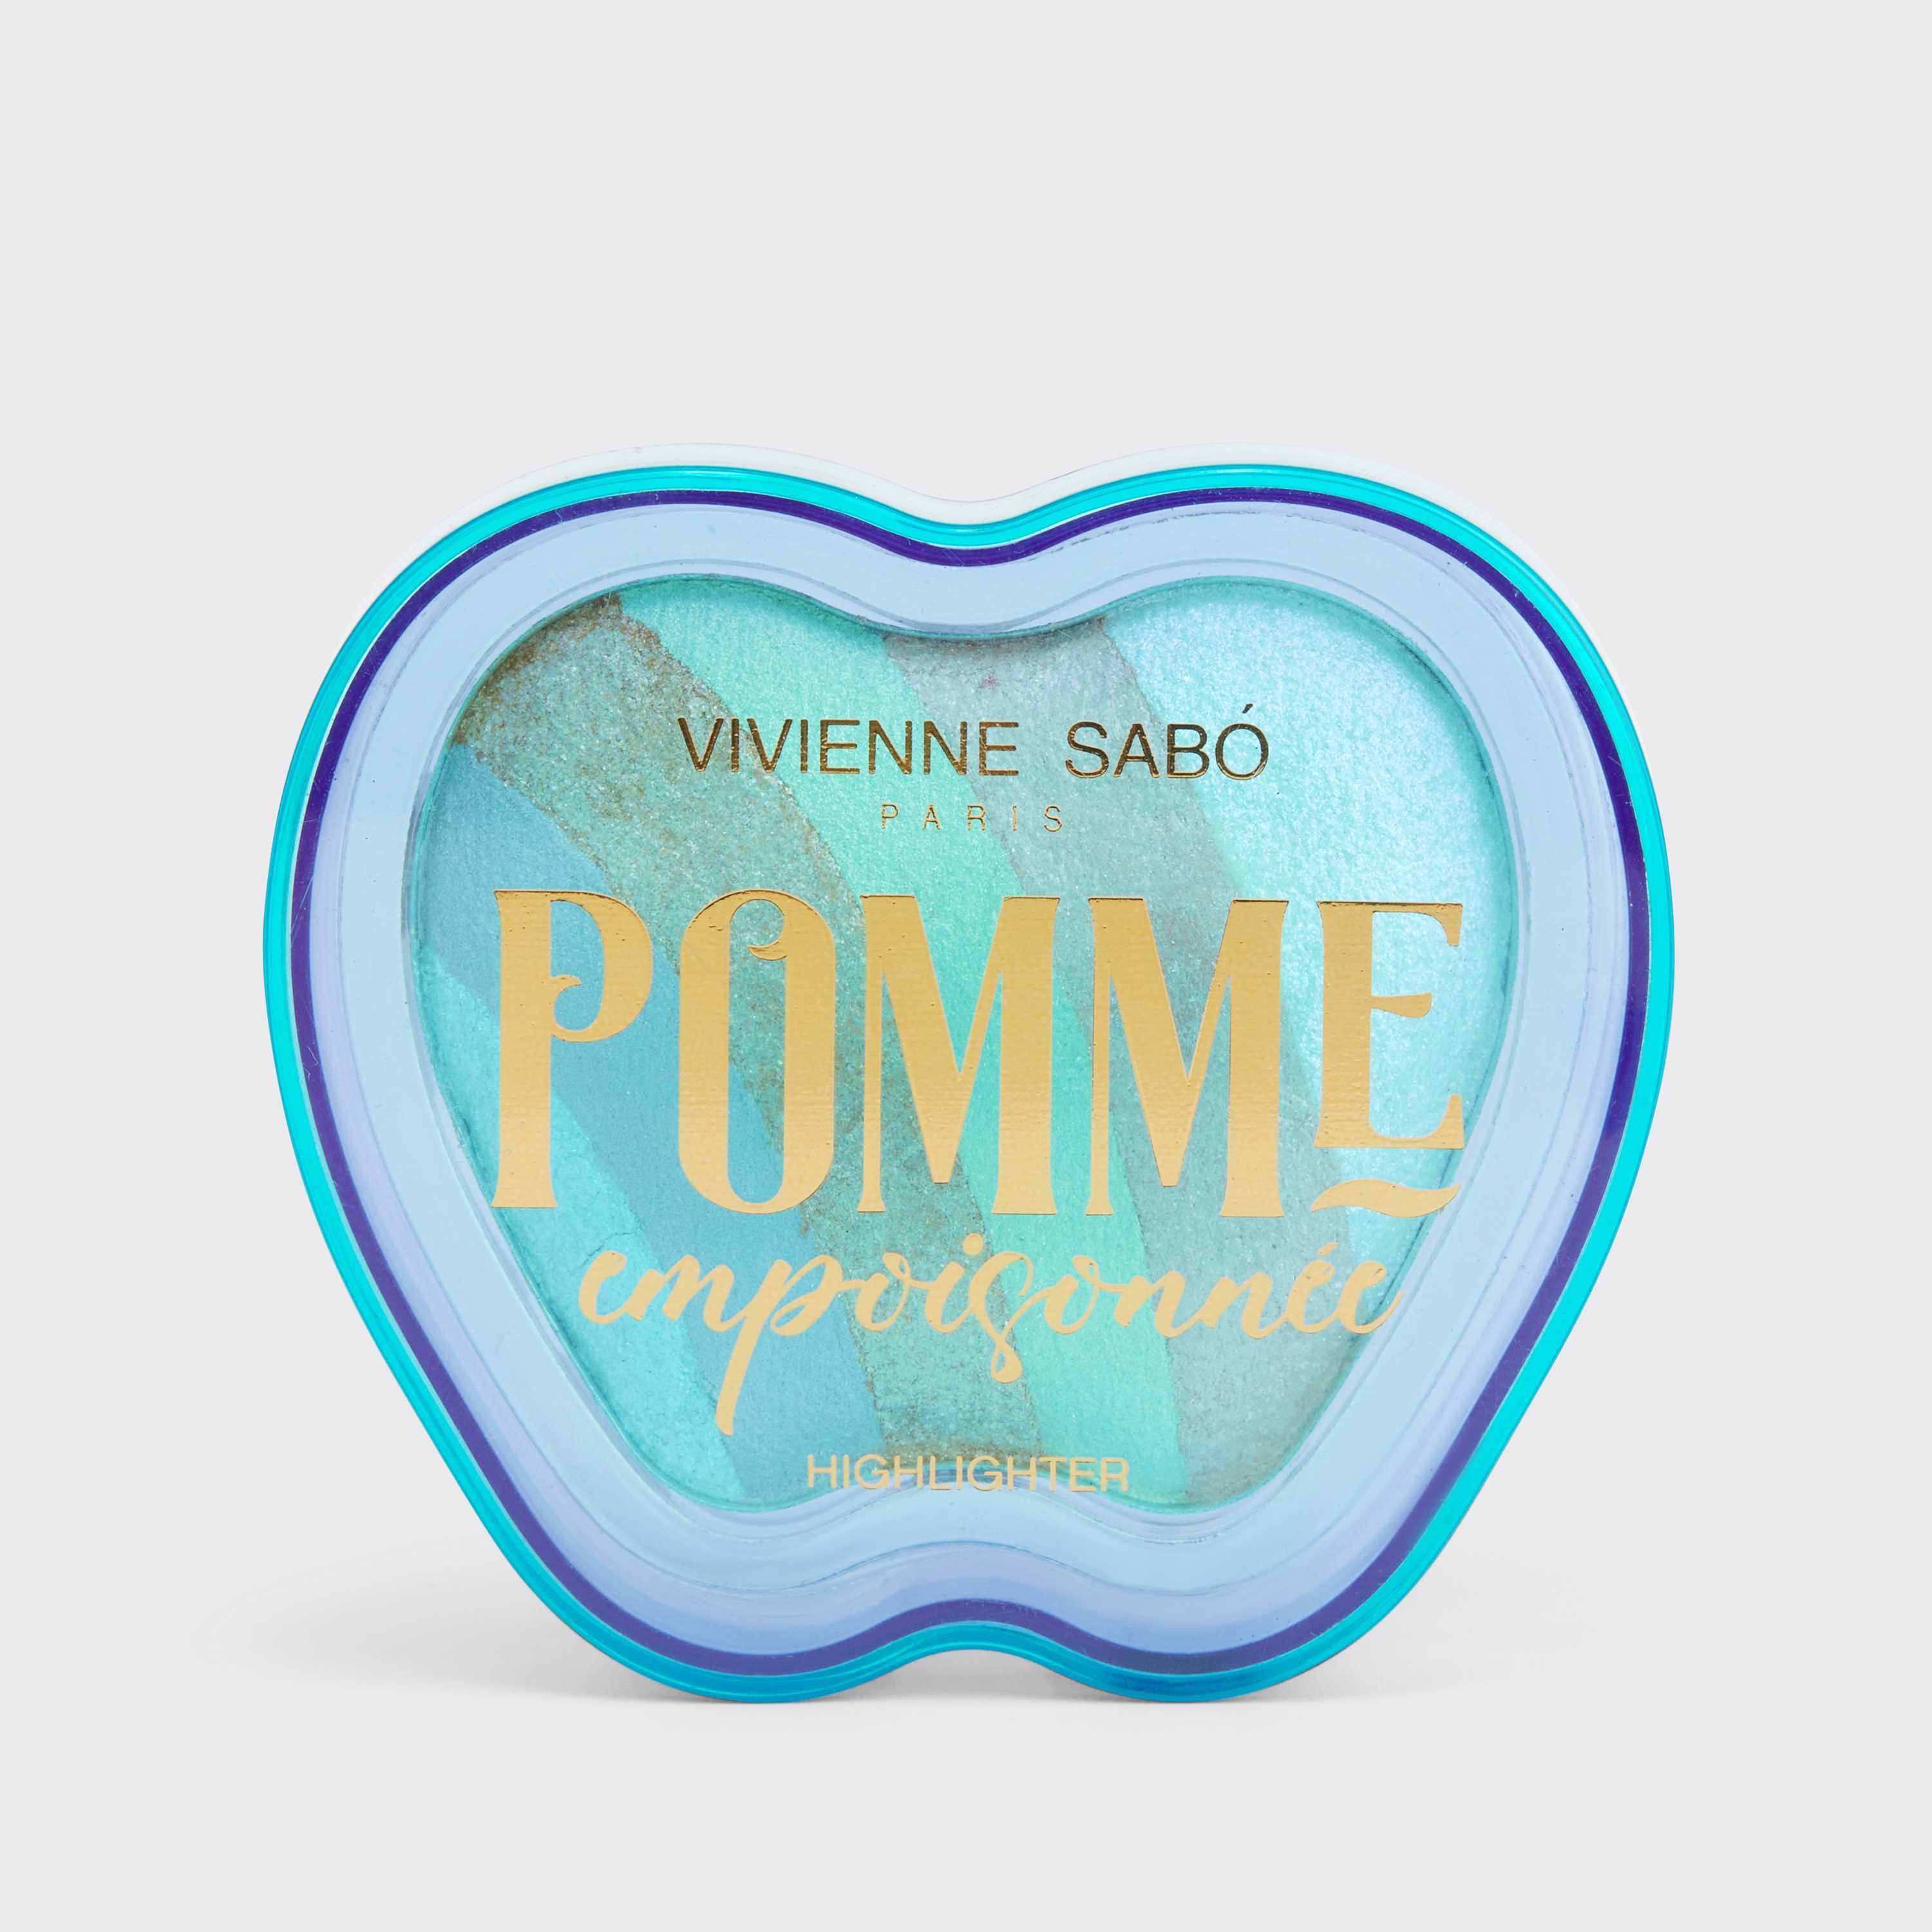 Vivienne Sabó - Highlighter for face Pomme Empoisonnee